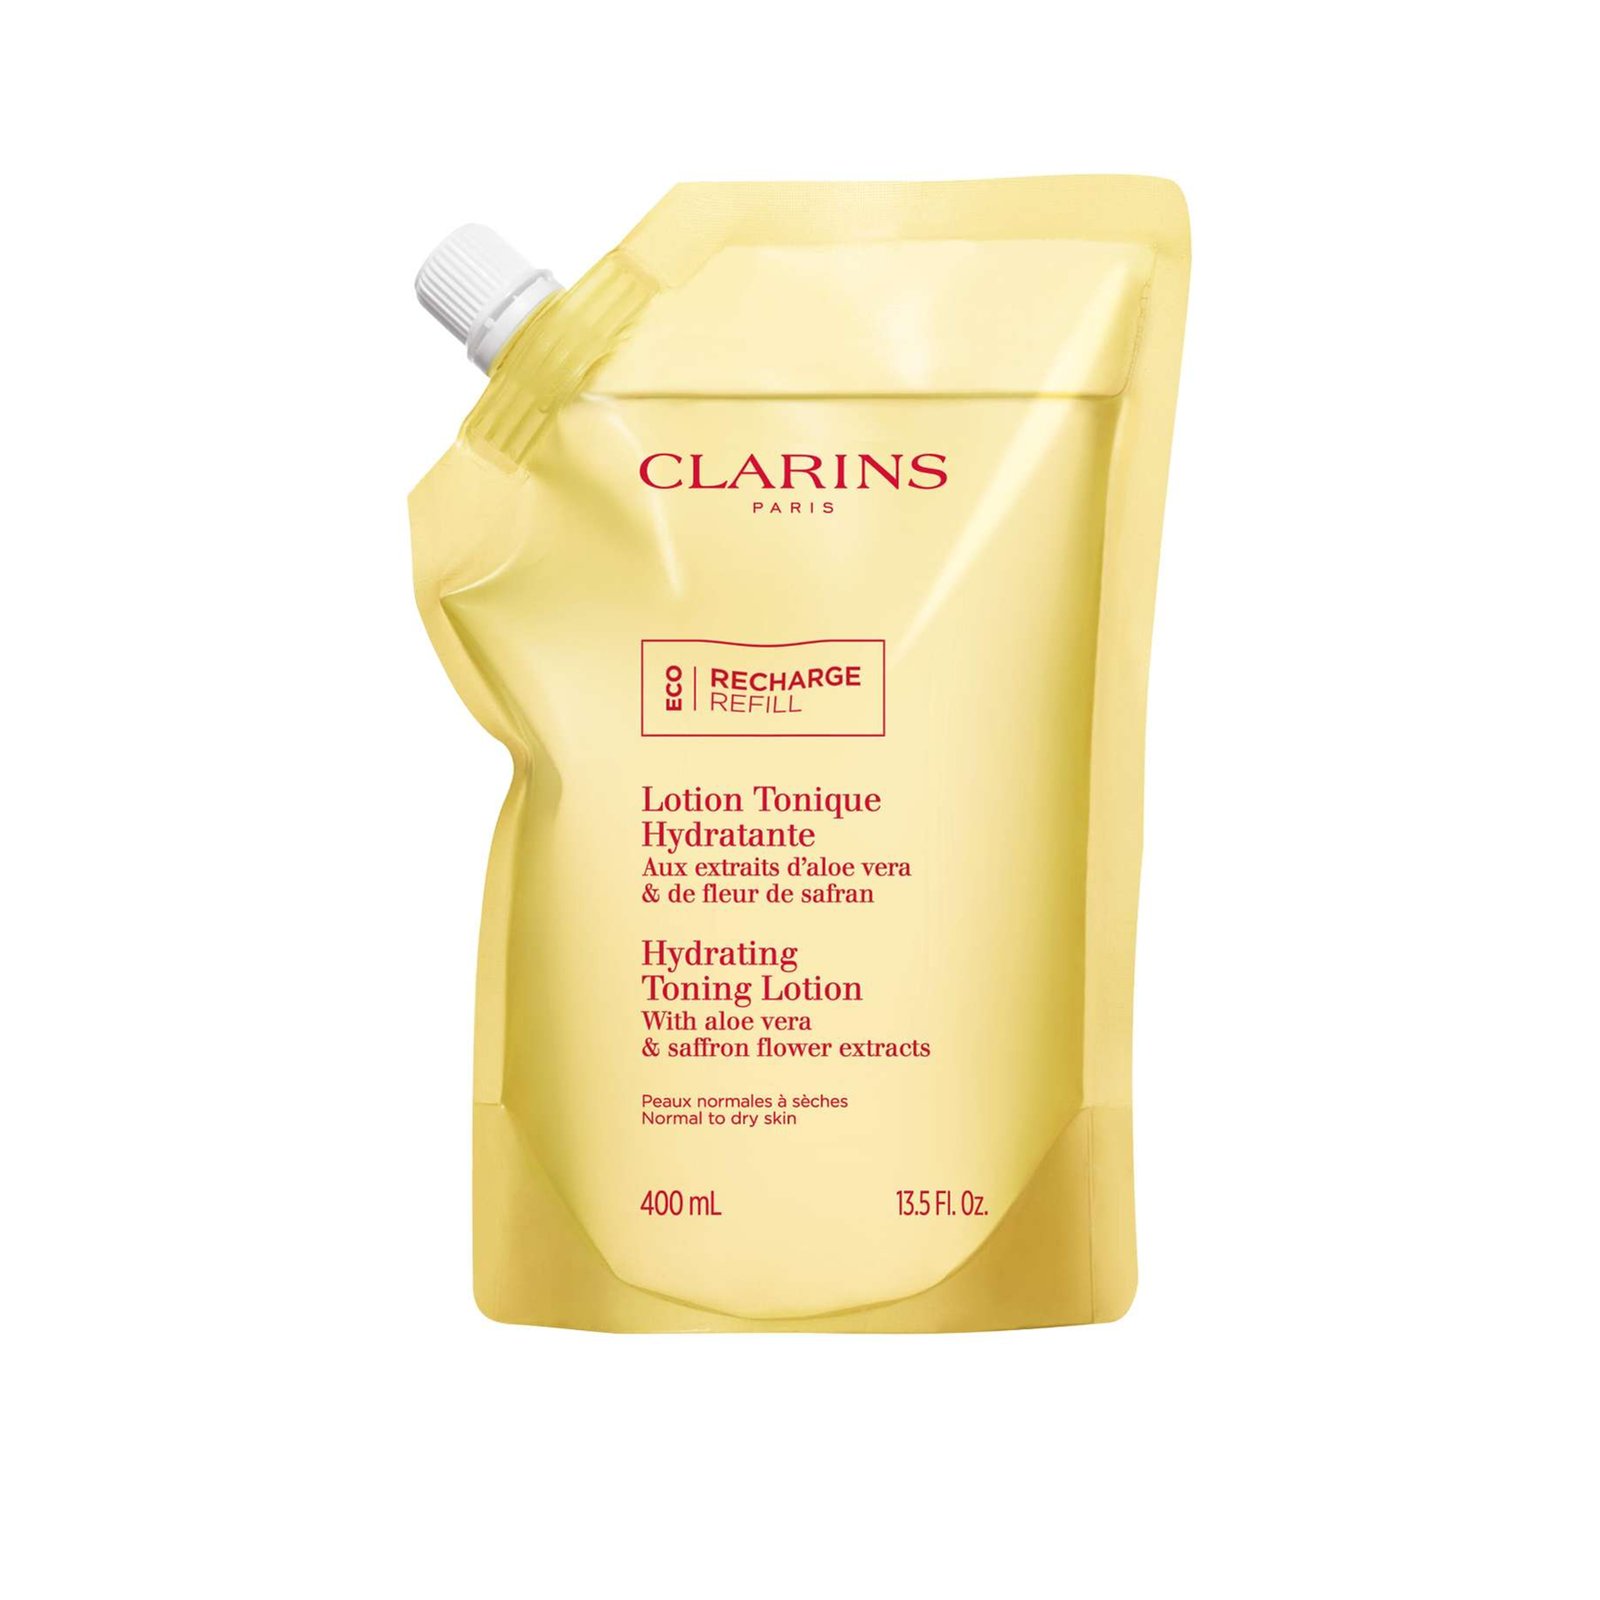 Clarins Hydrating Toning Lotion Eco-Refill 400ml (13.5floz)